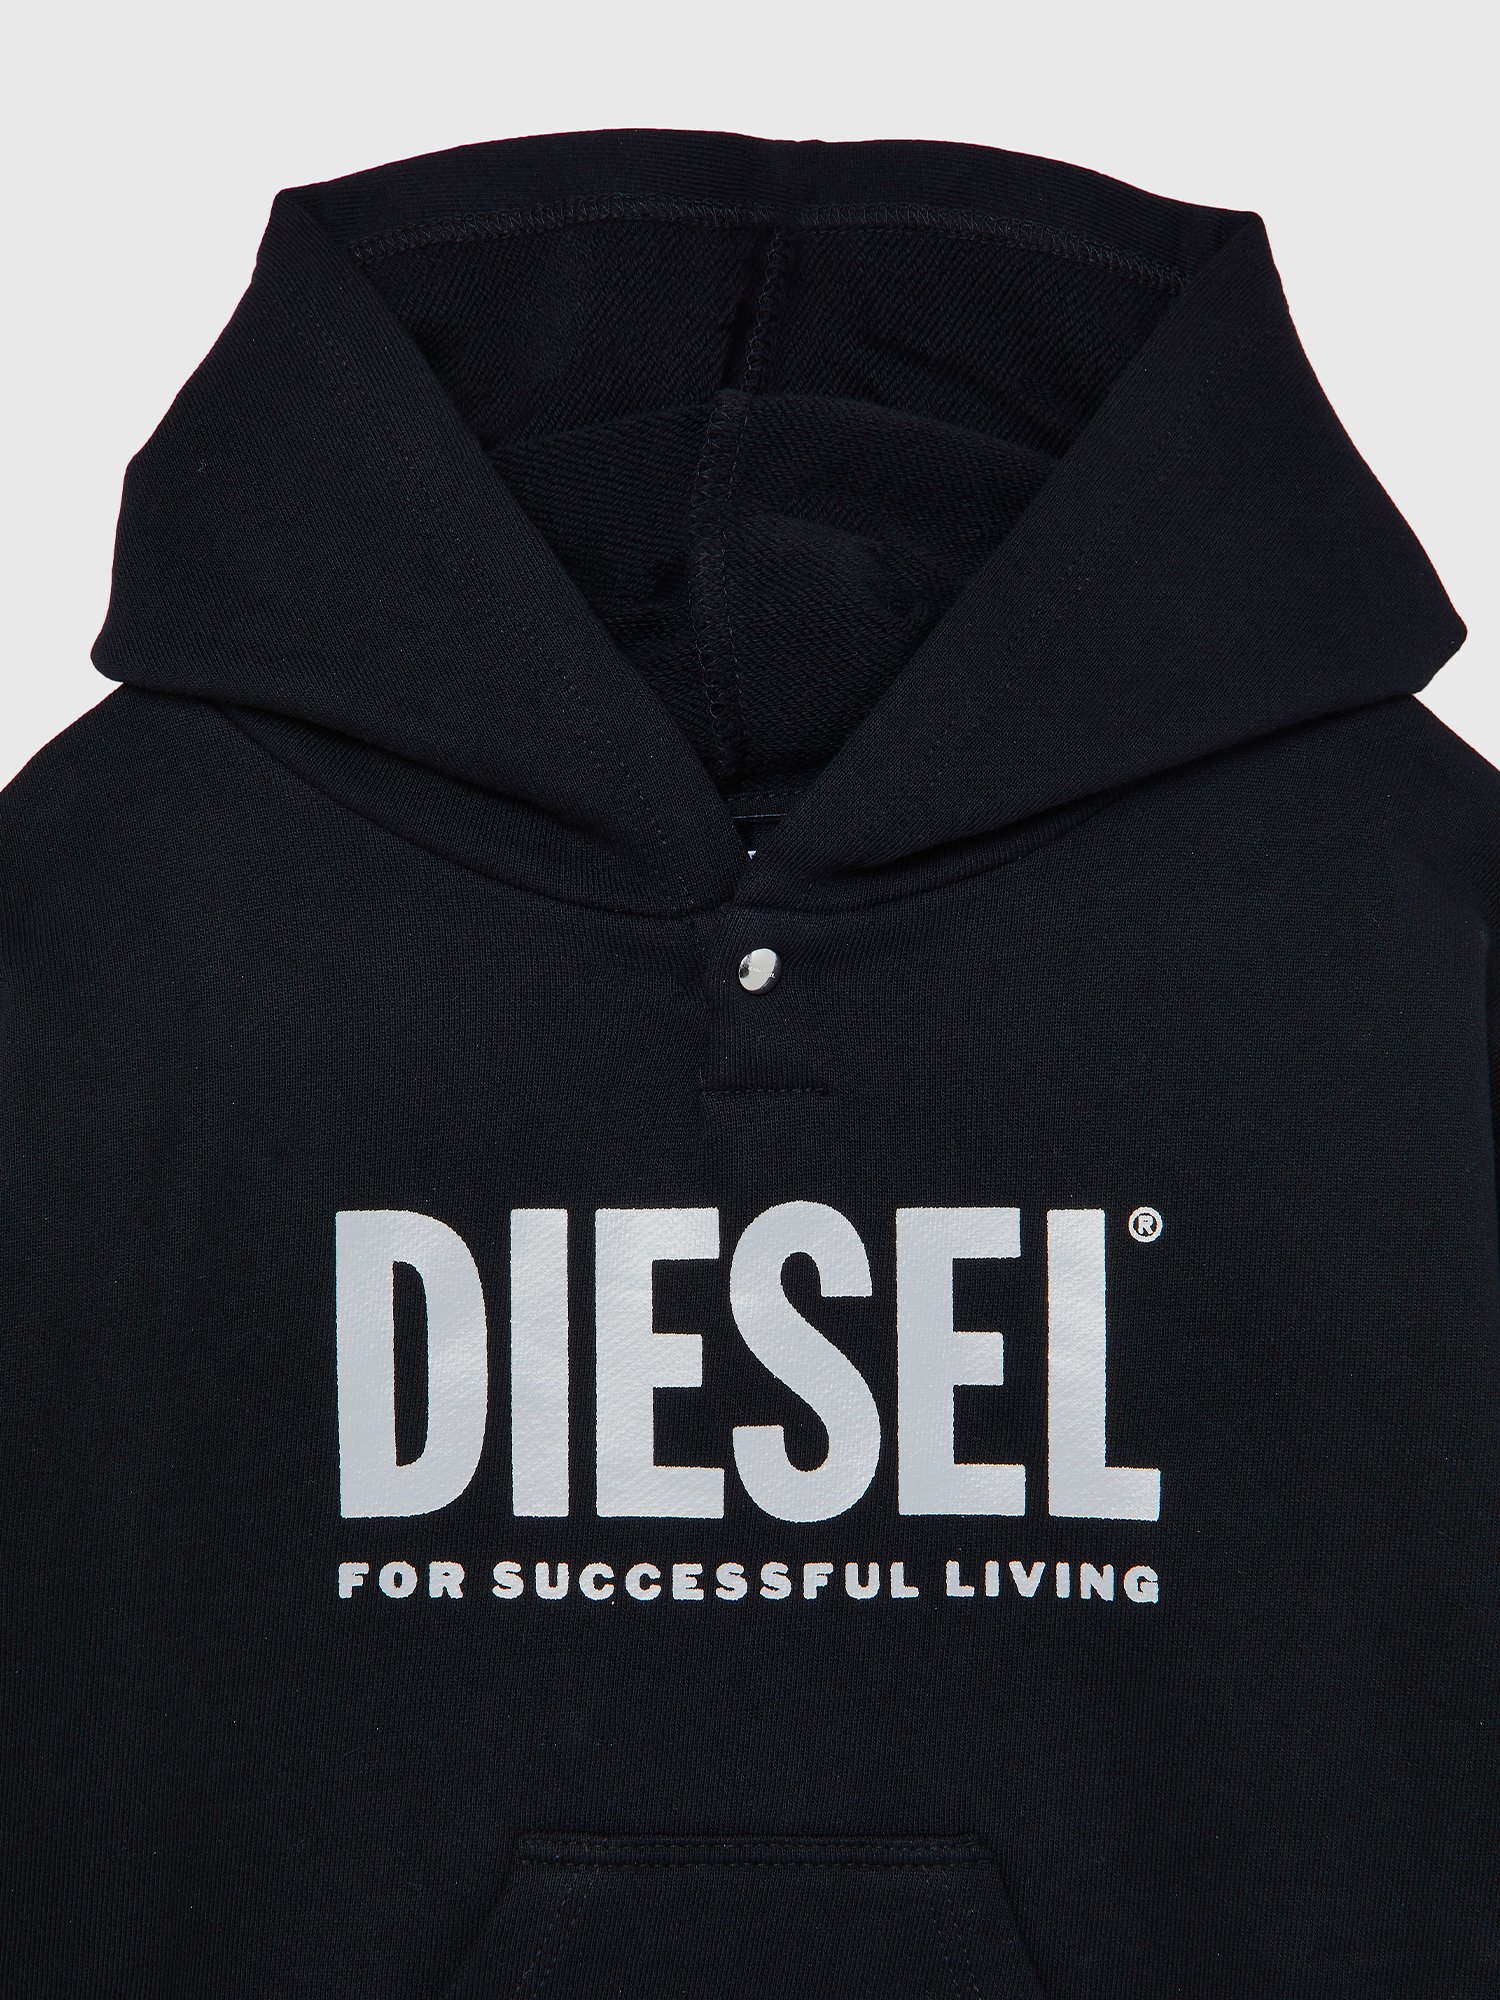 Diesel - DILSETB, Black - Image 3